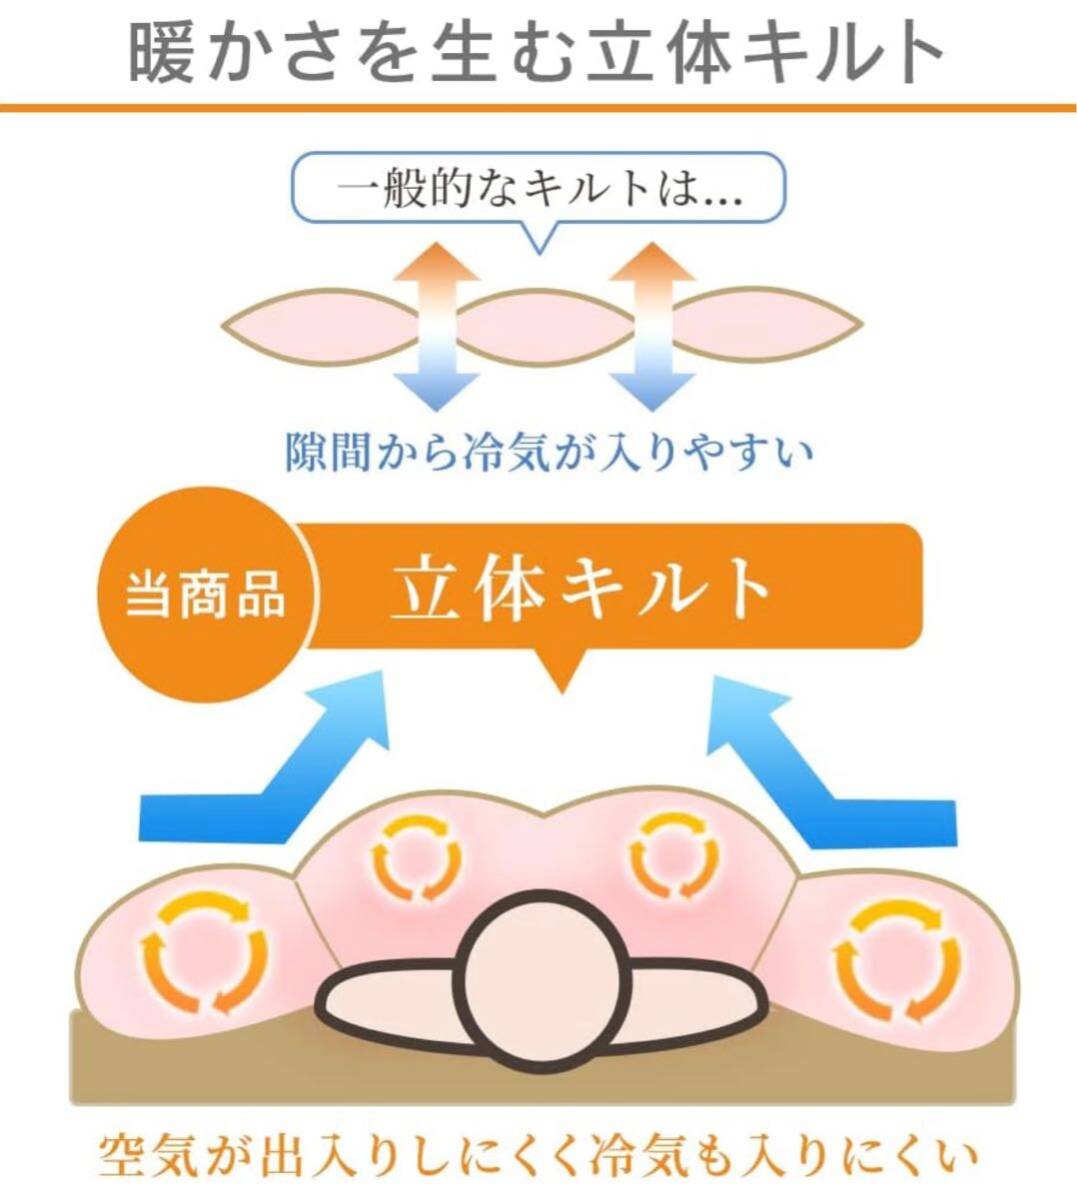 【未使用】アイリスプラザ 羽毛布団 シングル ホワイトダックダウン90% 日本製 4つ星 CILシルバーラベル アレルゲン低減 ブラウンの画像4